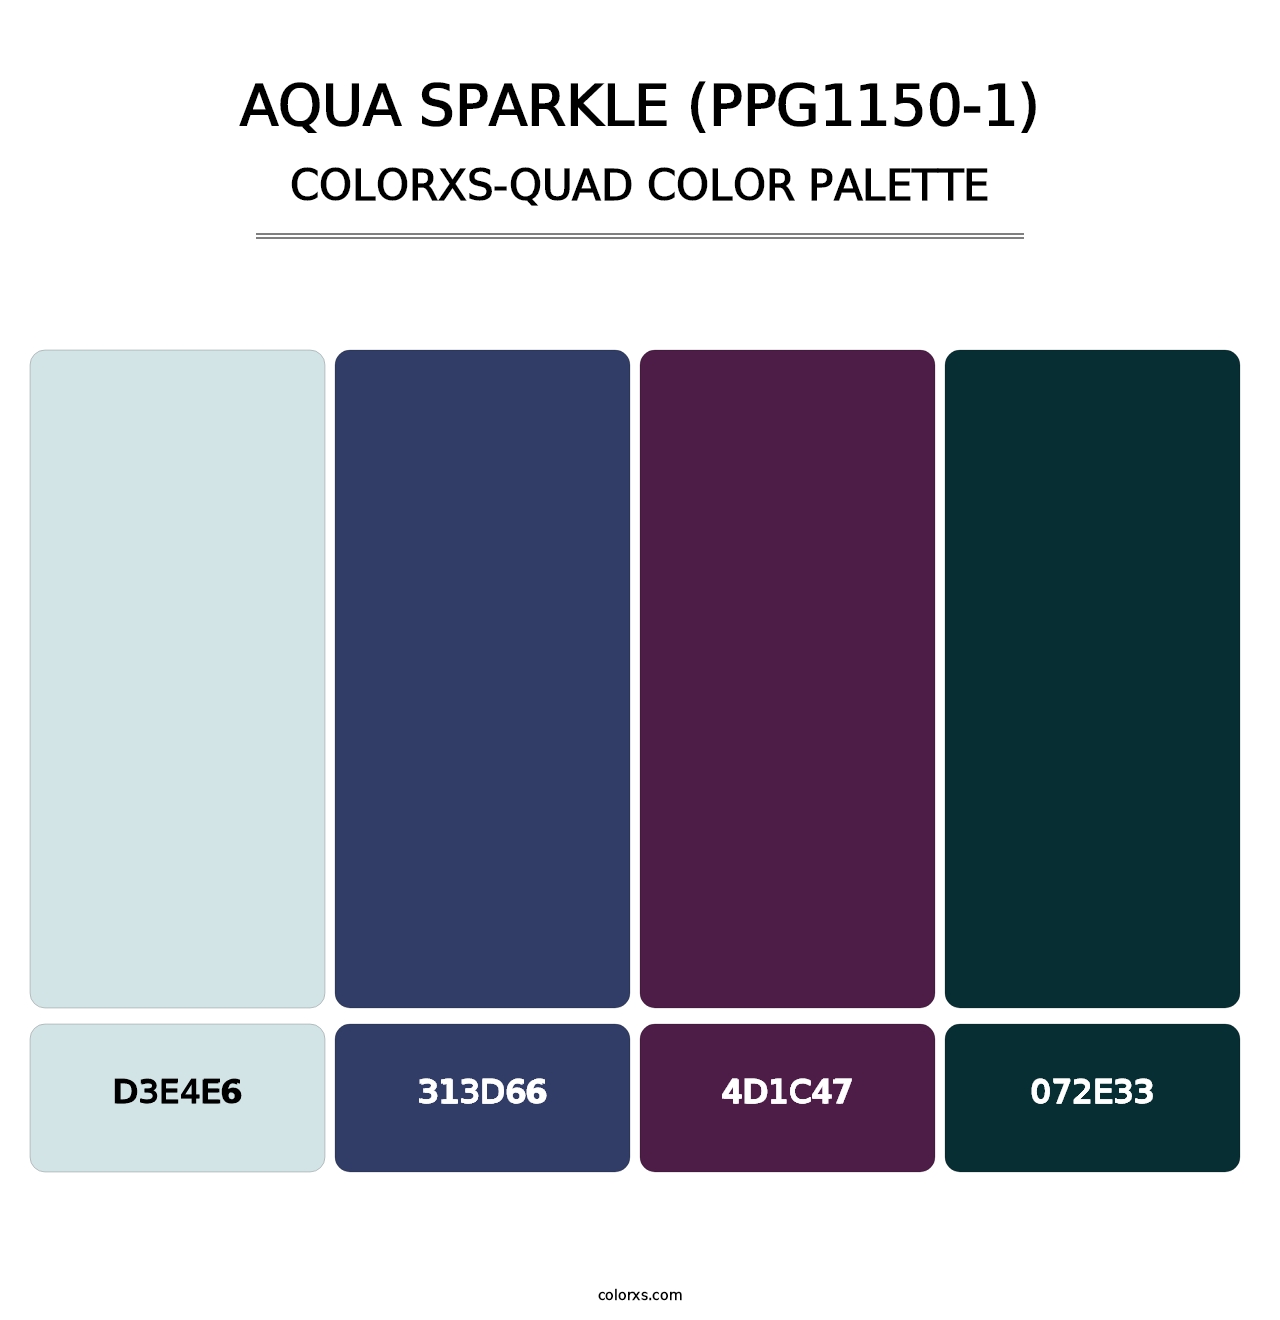 Aqua Sparkle (PPG1150-1) - Colorxs Quad Palette